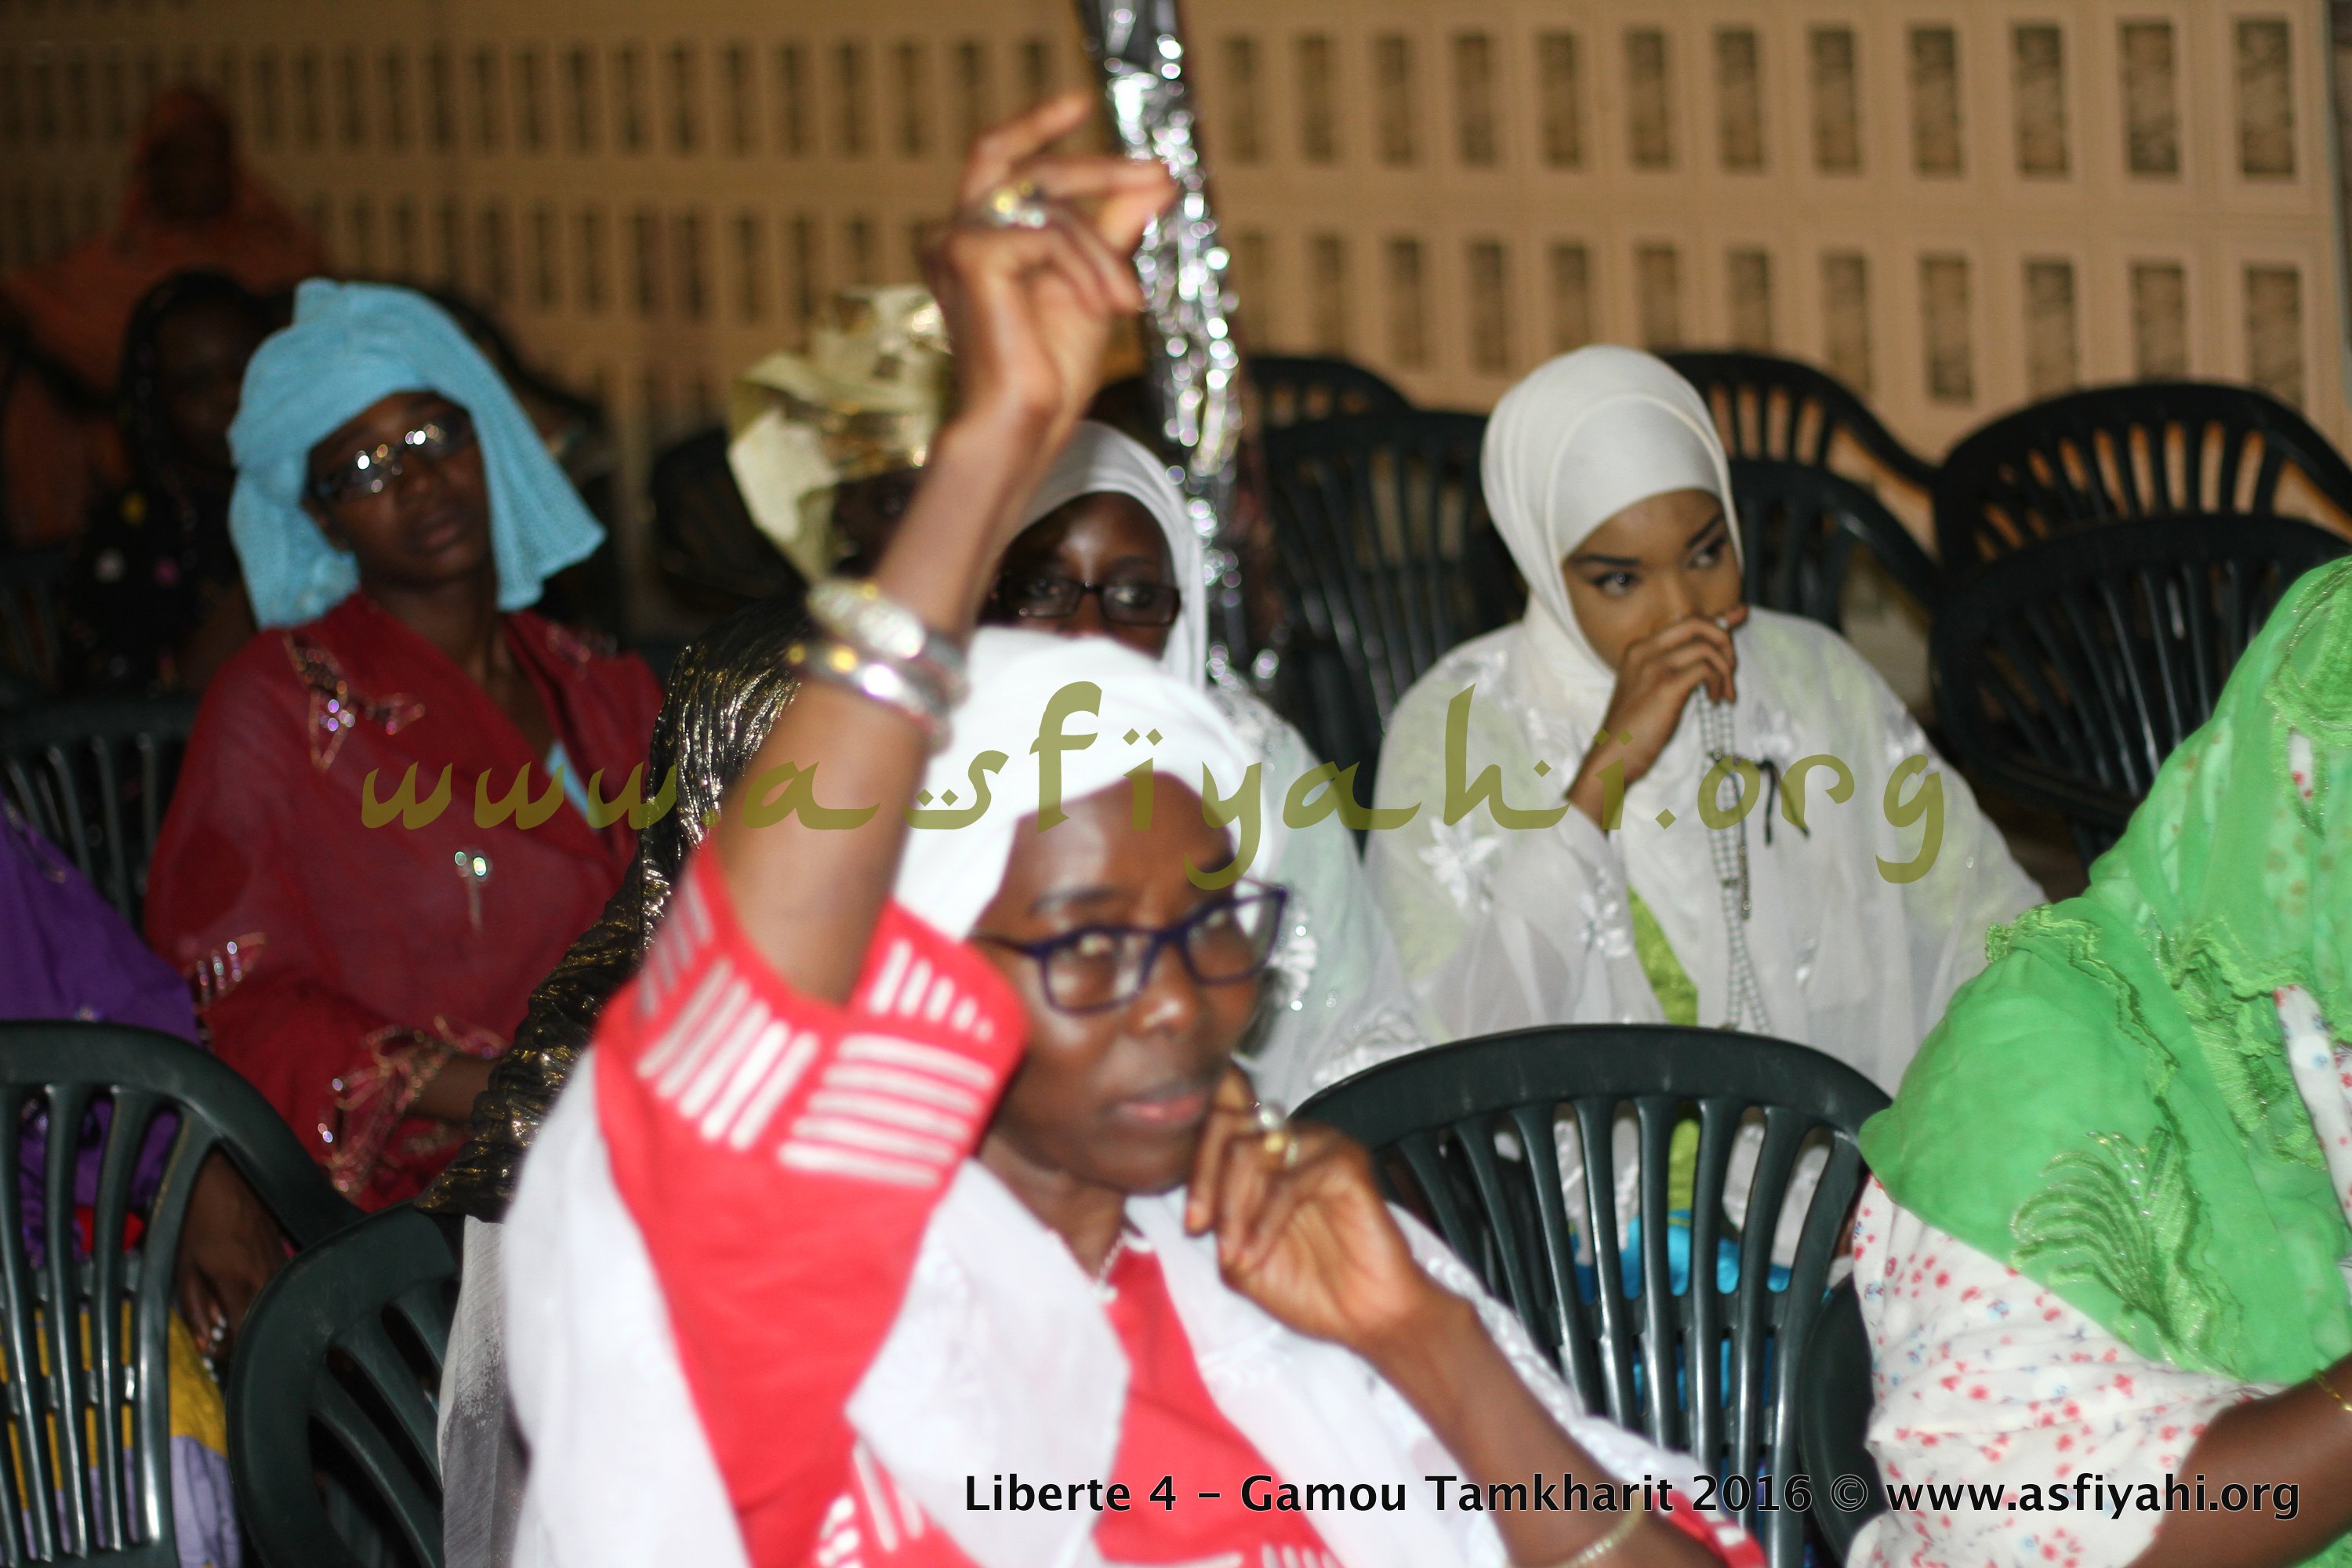 PHOTOS - 11 OCTOBRE 2016 - Les Images du Gamou Tamkharit 2016 à Liberte 4, présidé par Serigne Habib Sy Ibn Serigne Mbaye Sy Mansour